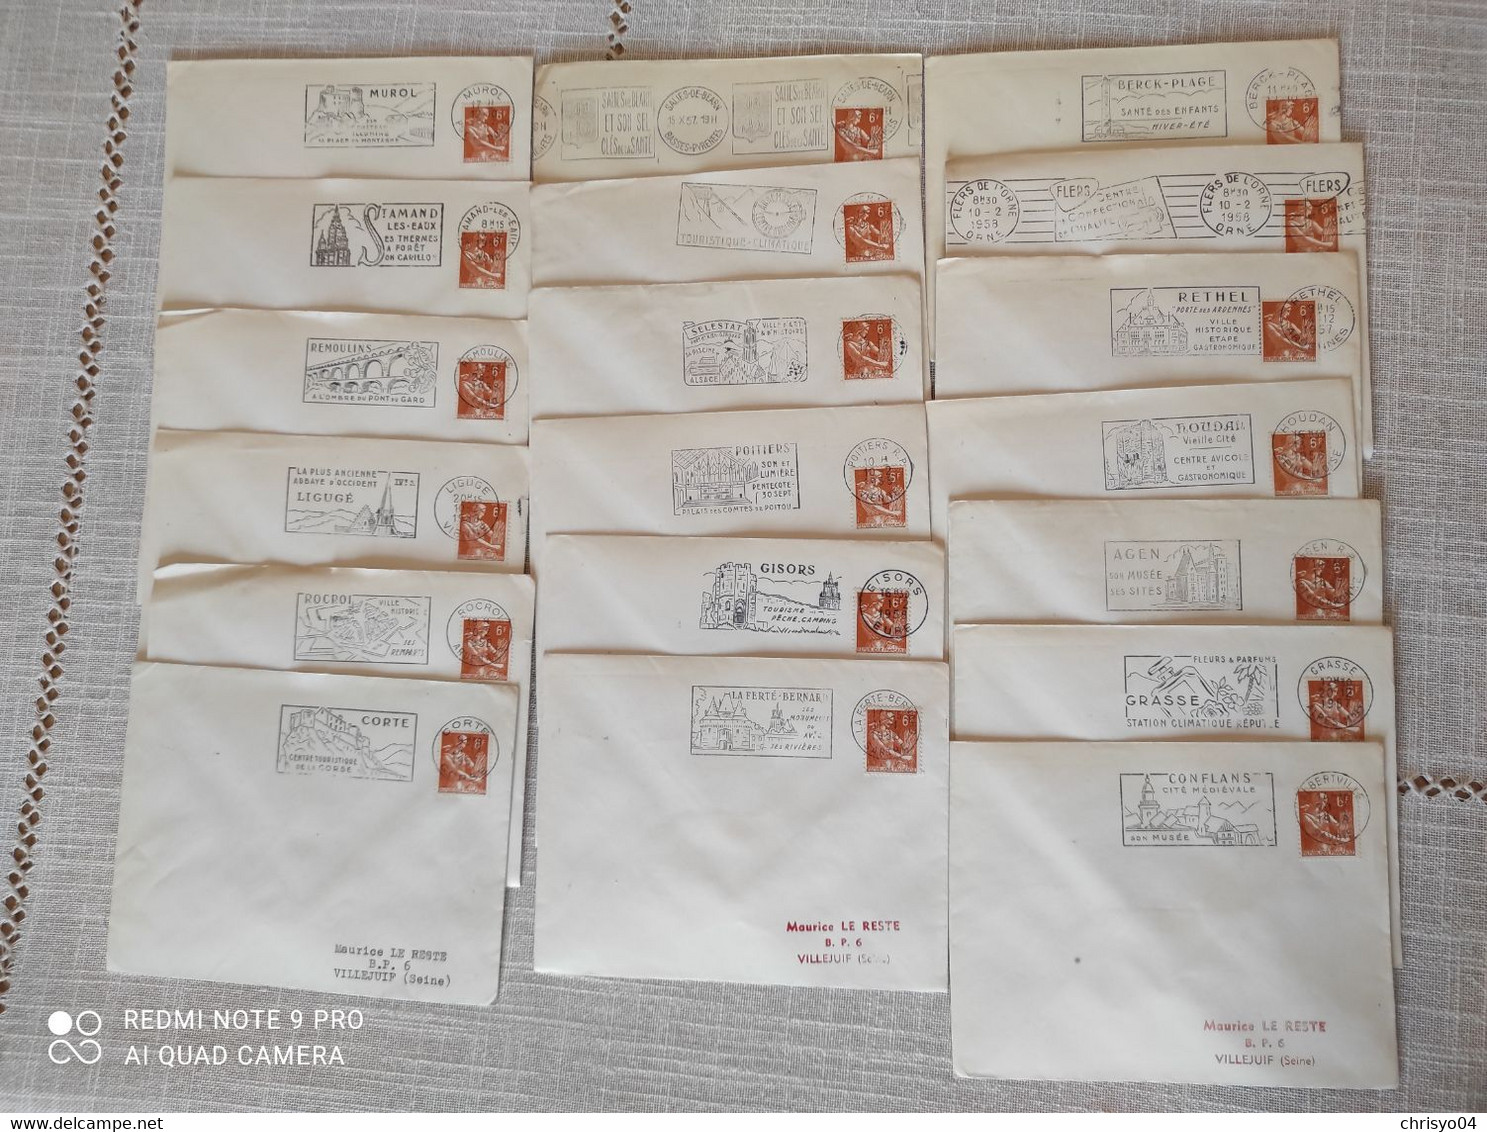 1V3 Cr  Gros lot de 450 enveloppes oblitérations mécaniques flammes timbres Scotem